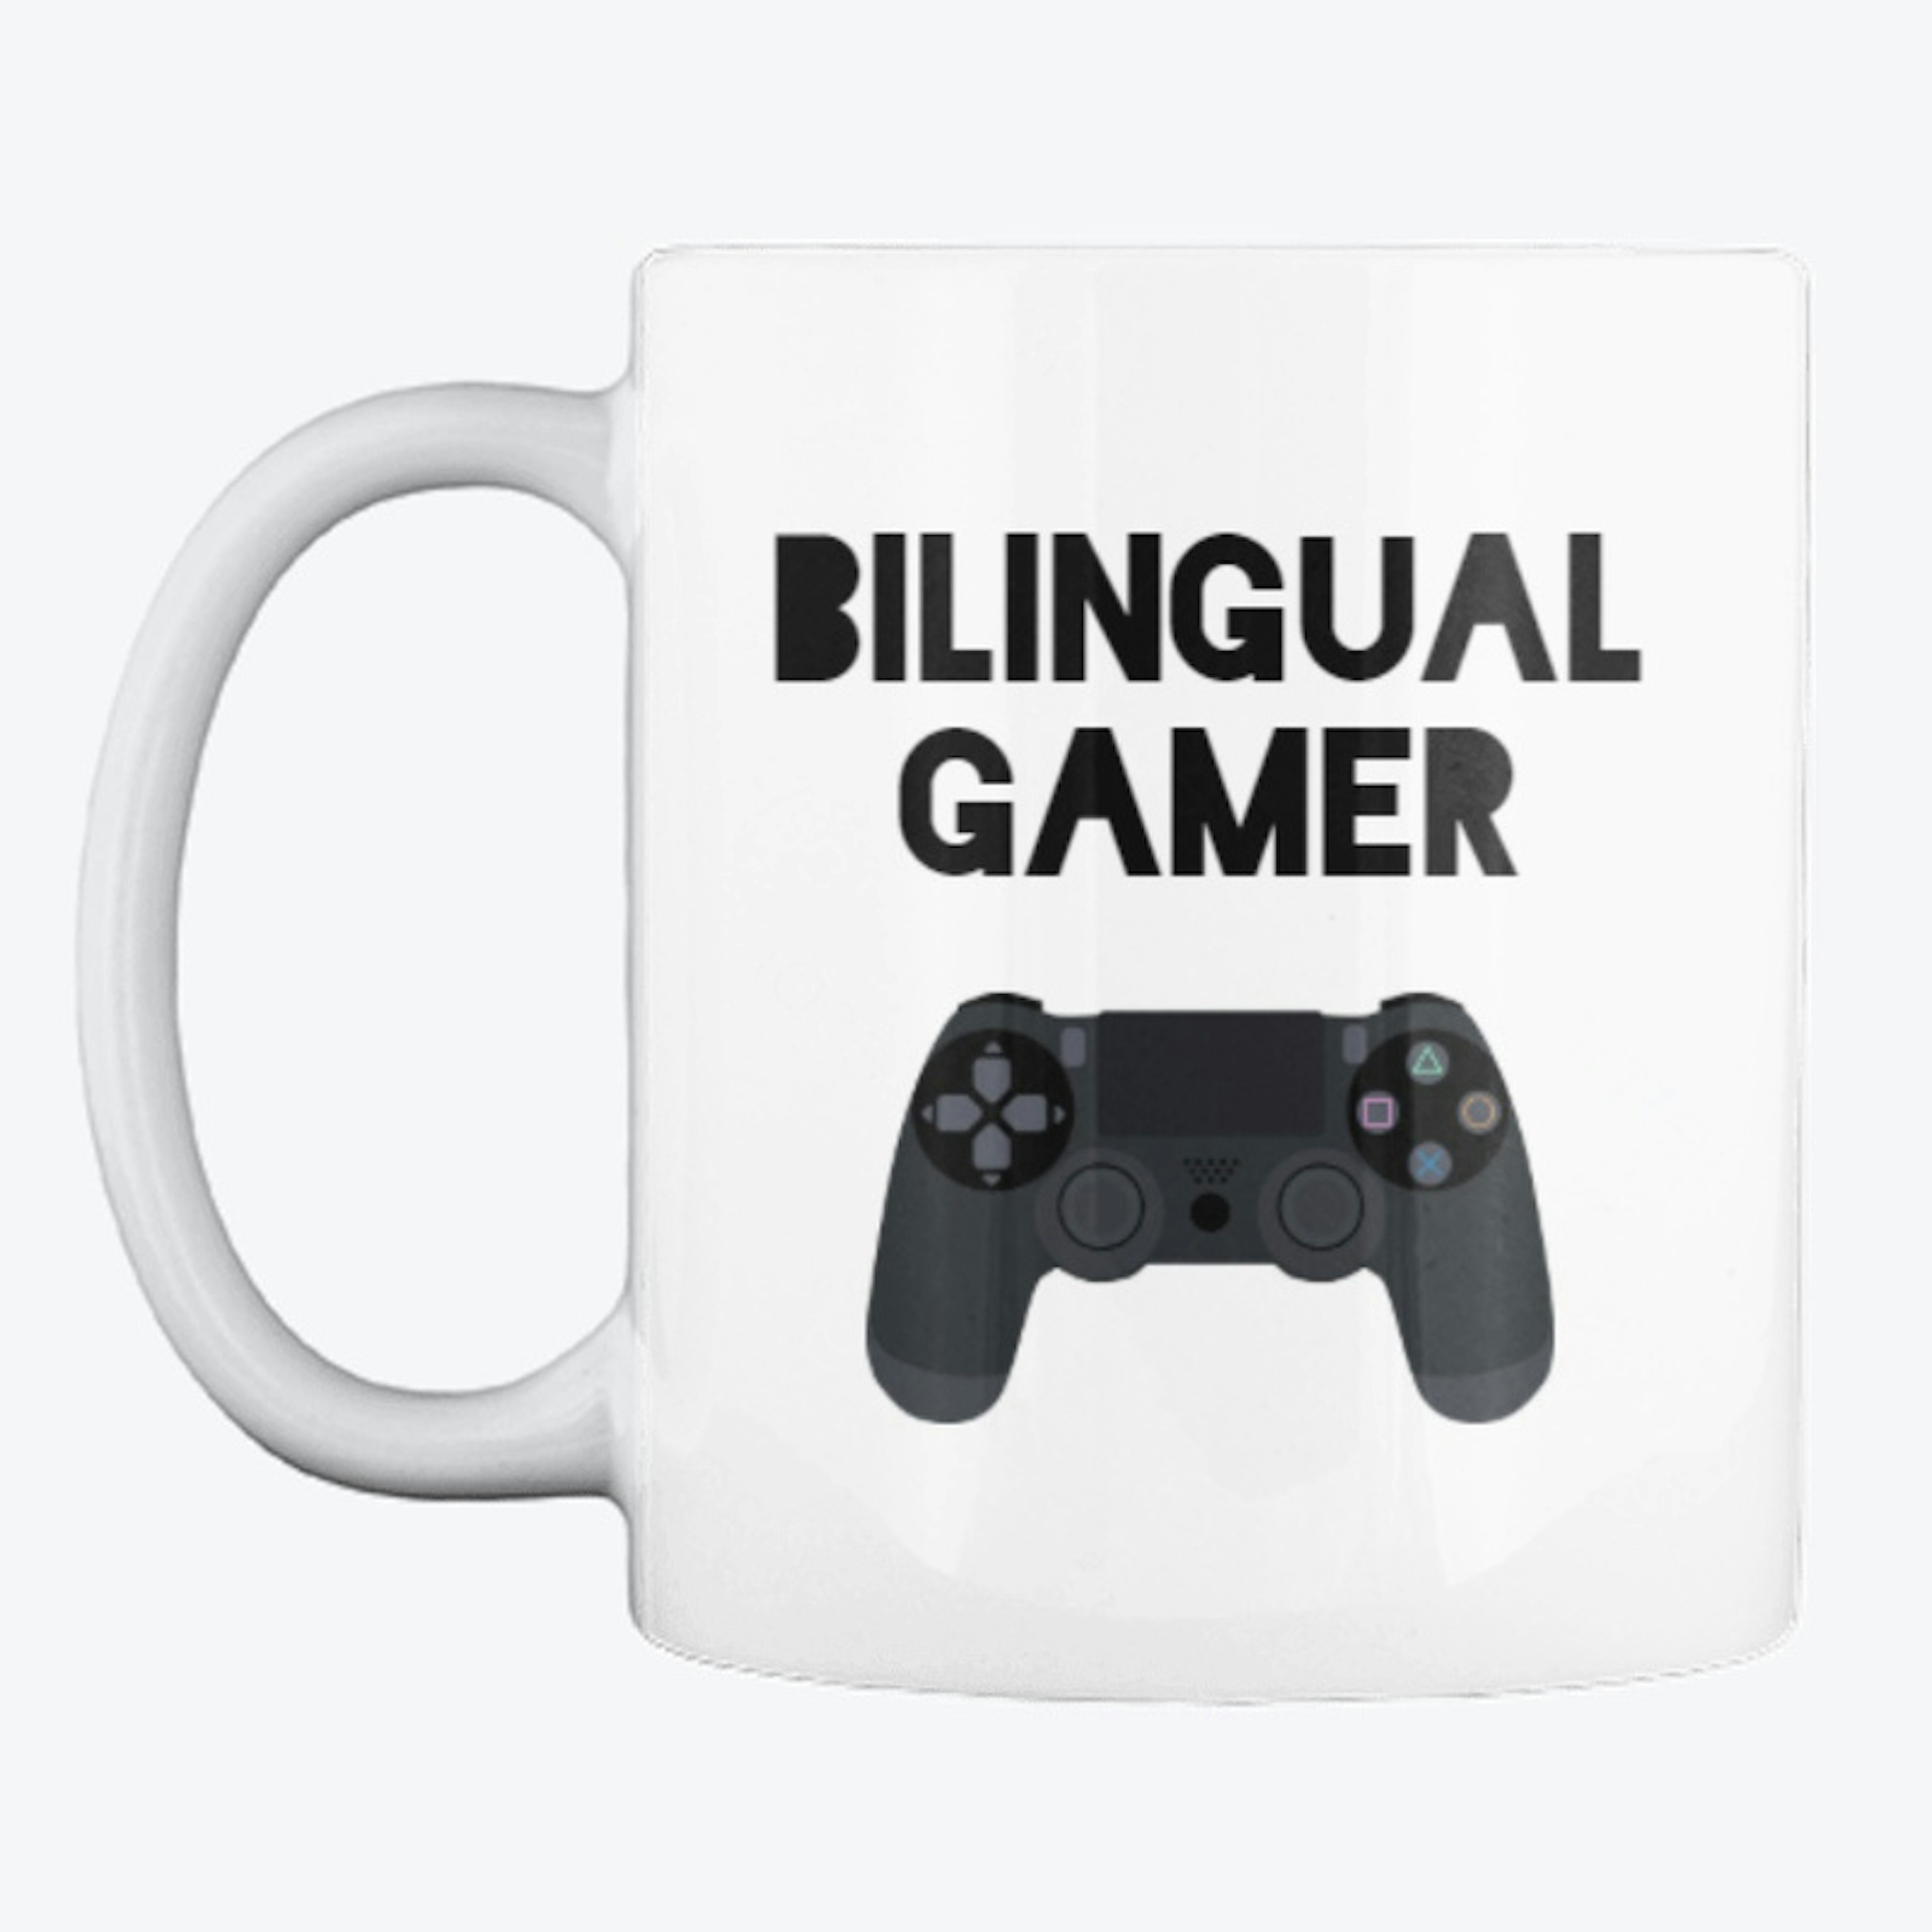 Bilingual gamer